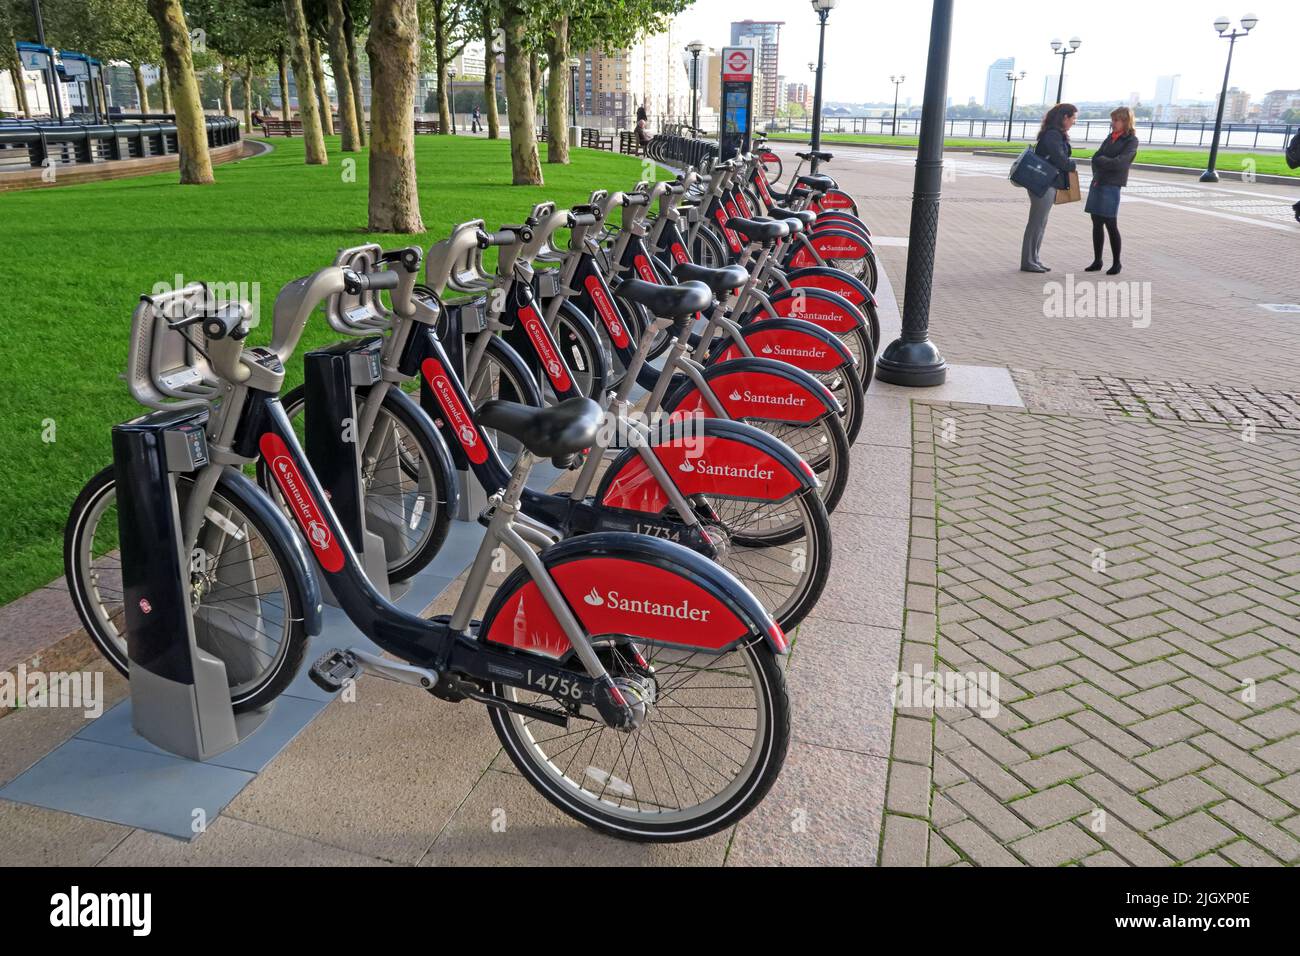 Santander, Londres Boris Bike Scheme, à Canary Wharf, est de Londres, Angleterre, Royaume-Uni Banque D'Images